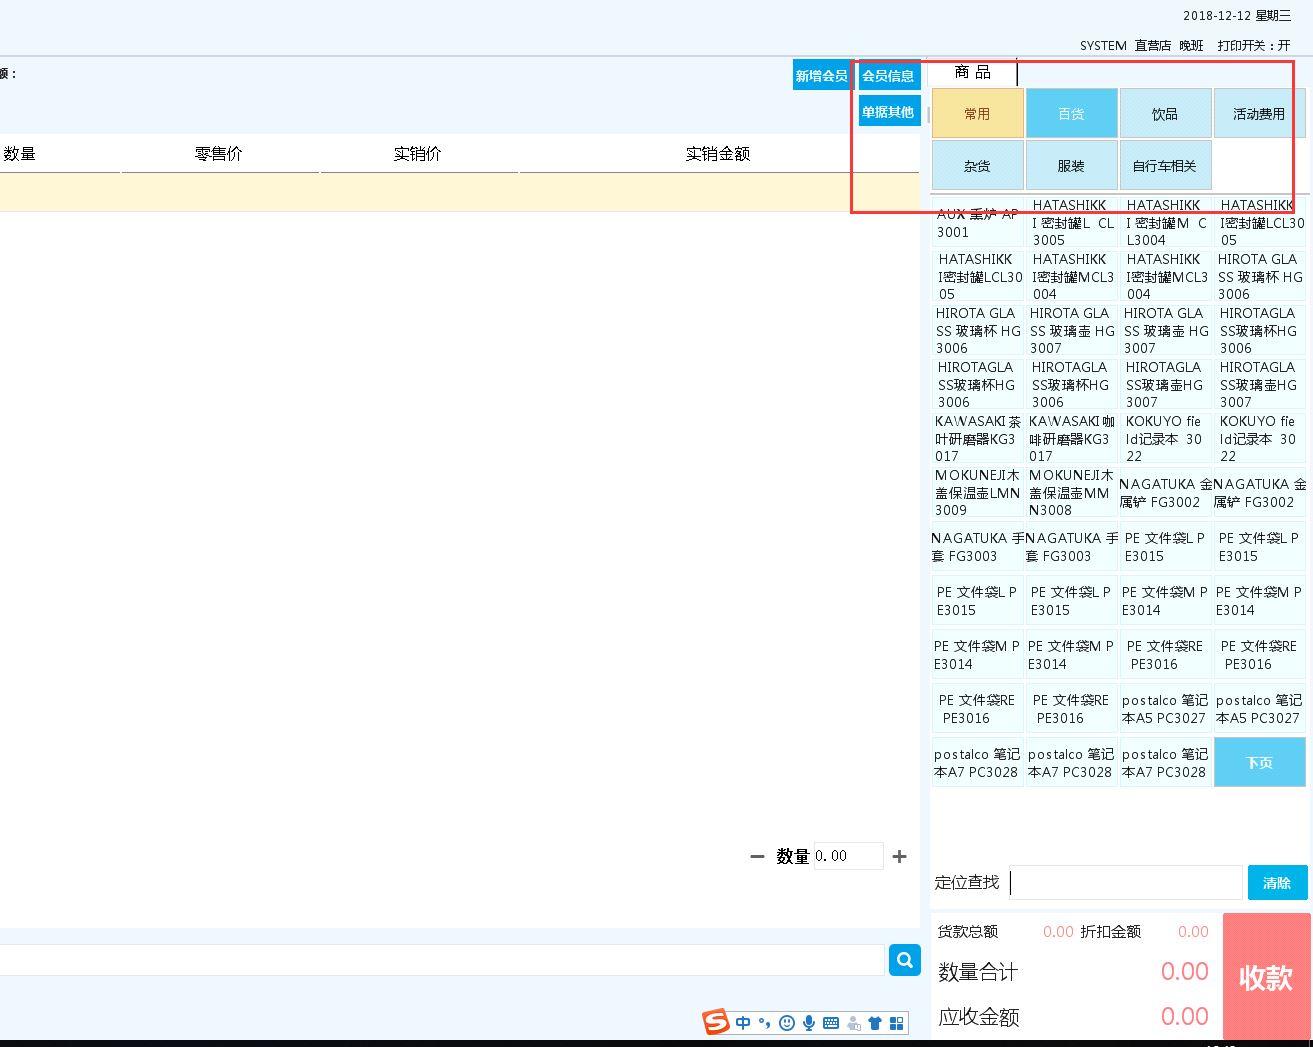 金蝶软件专业版凭证记账格式的设置